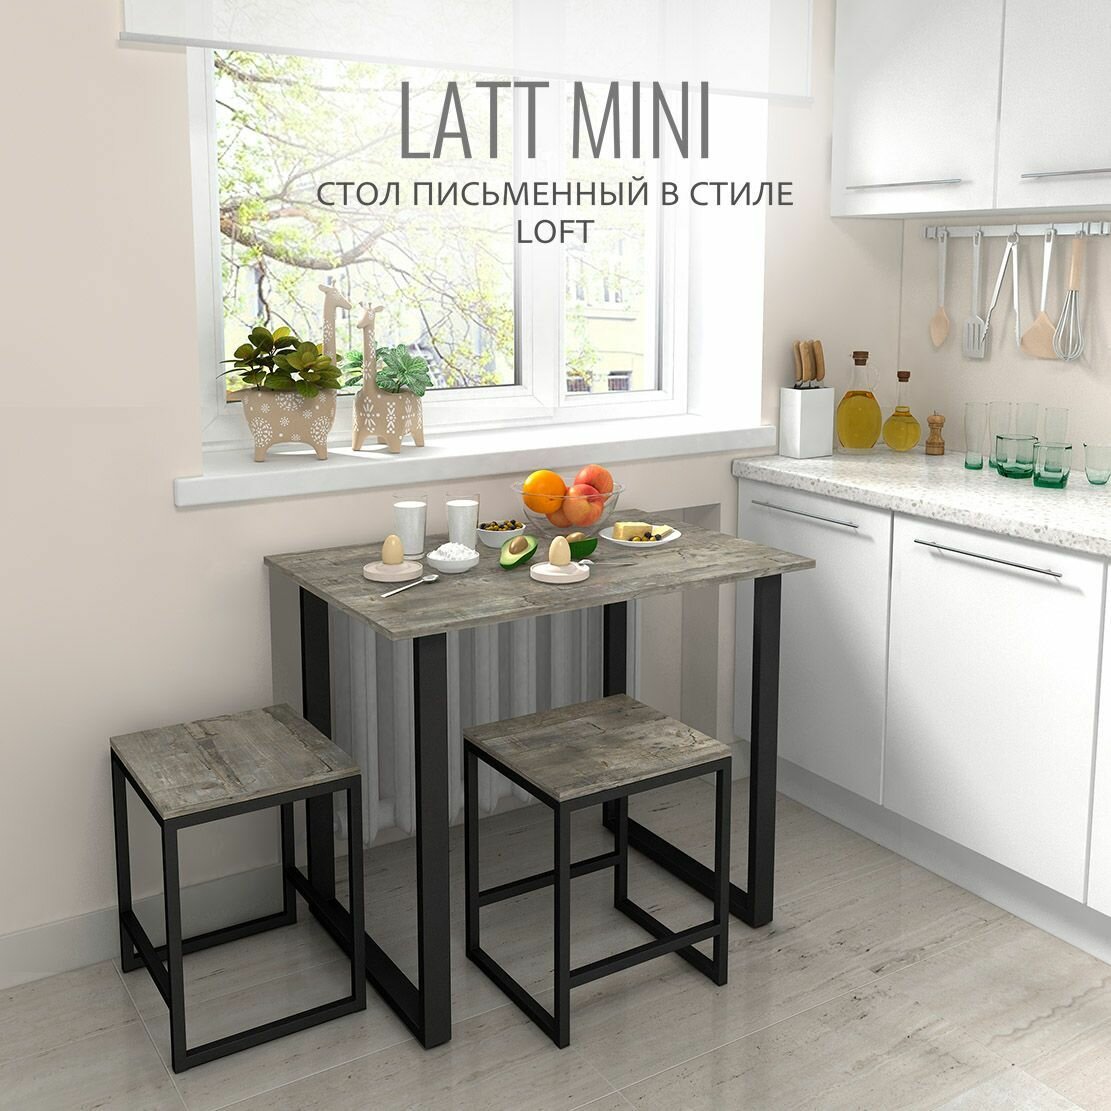 Стол письменный LATT mini, серый, компьютерный, офисный, кухонный, 90х55х75 см, гростат